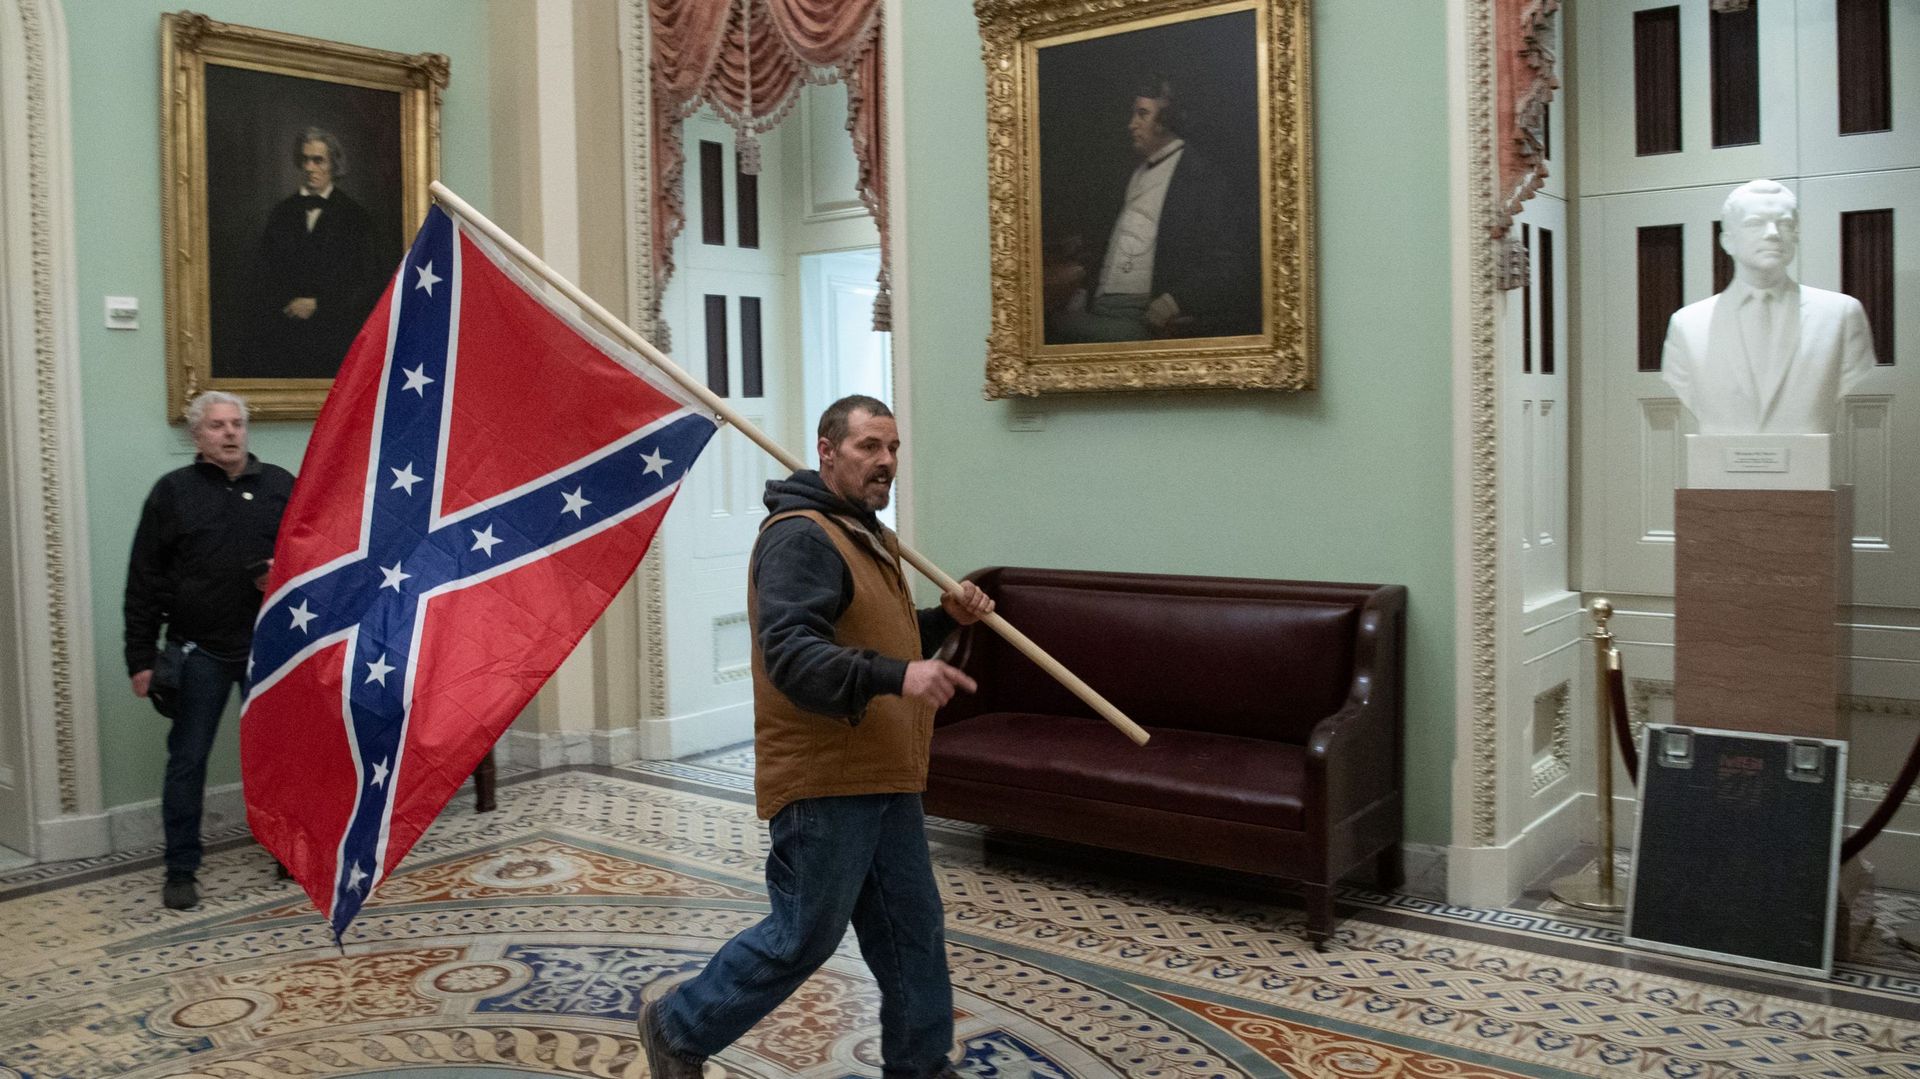 Le drapeau des Etats confédérés, symbole raciste pour les historiens contemporains.